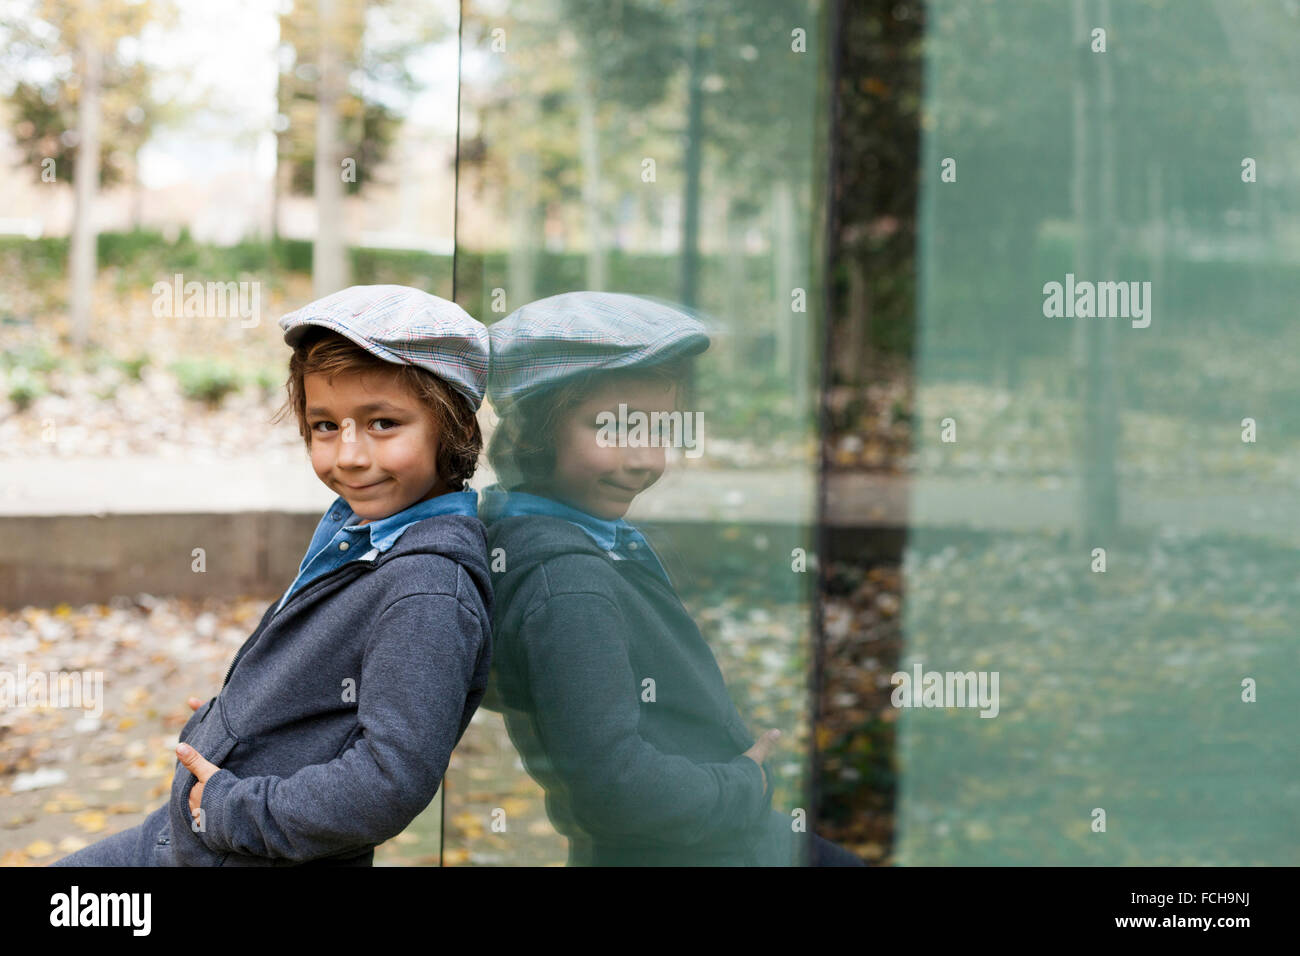 Porträt von lächelnden kleinen Jungen und seinem Spiegelbild auf eine Glasscheibe Stockfoto